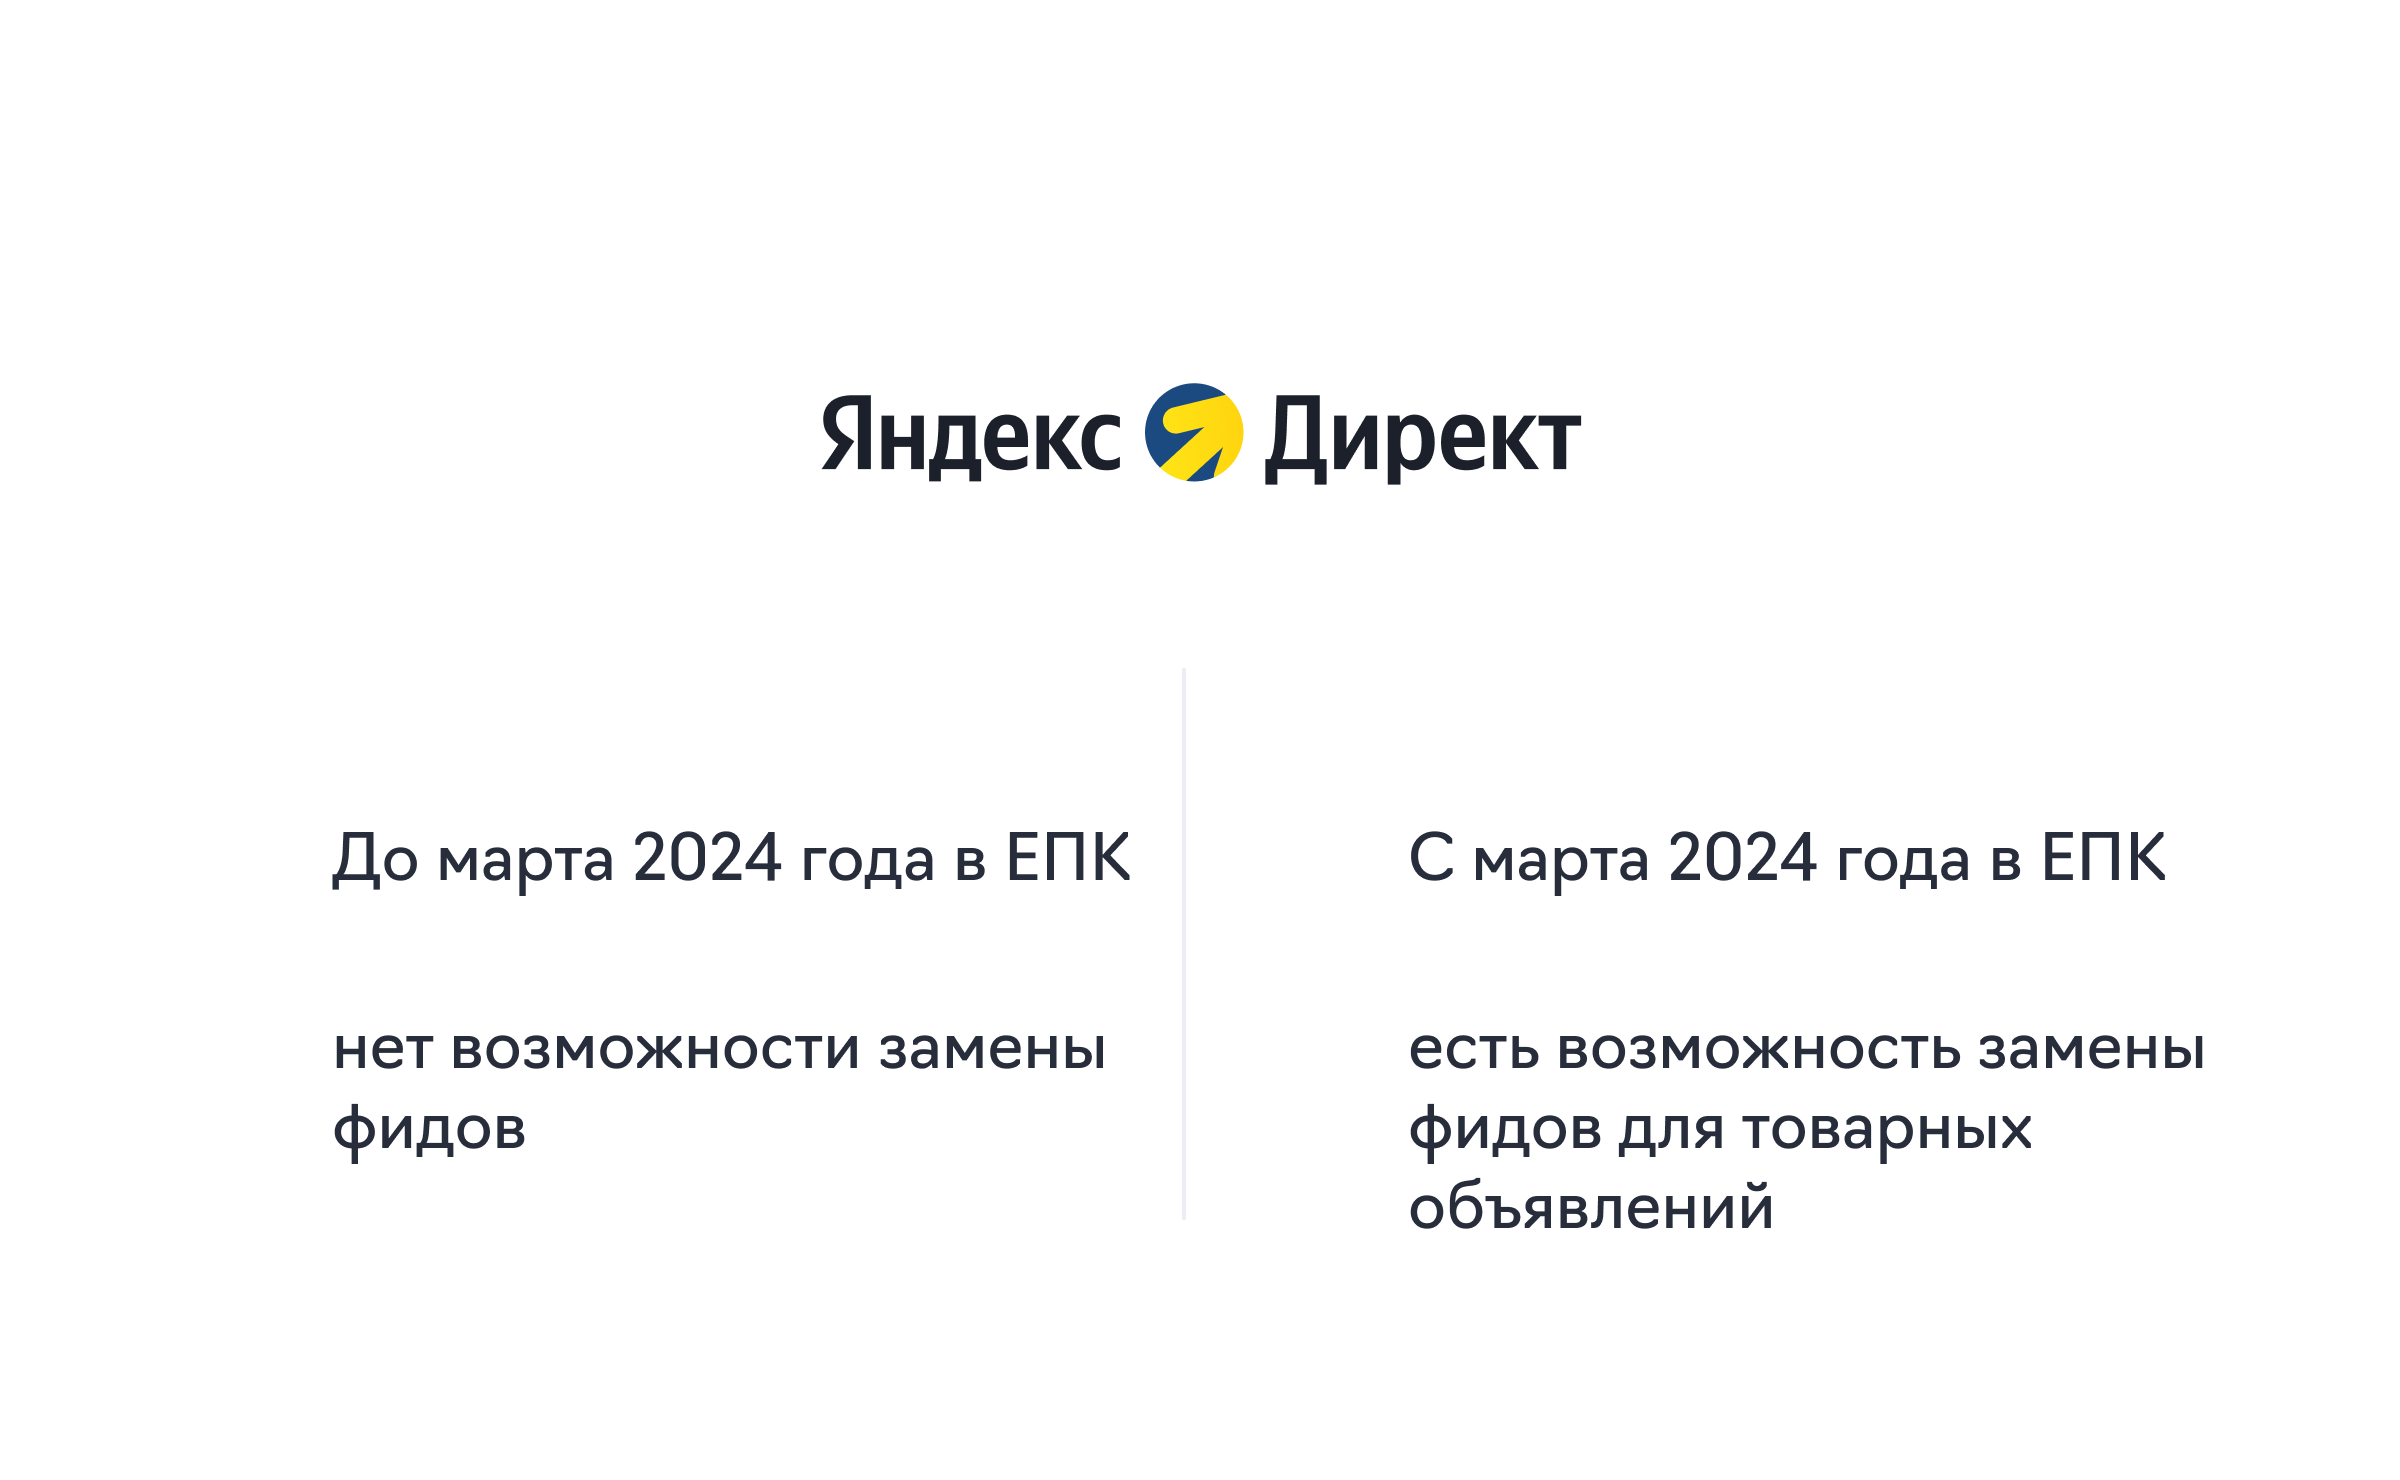 Яндекс Директ #5